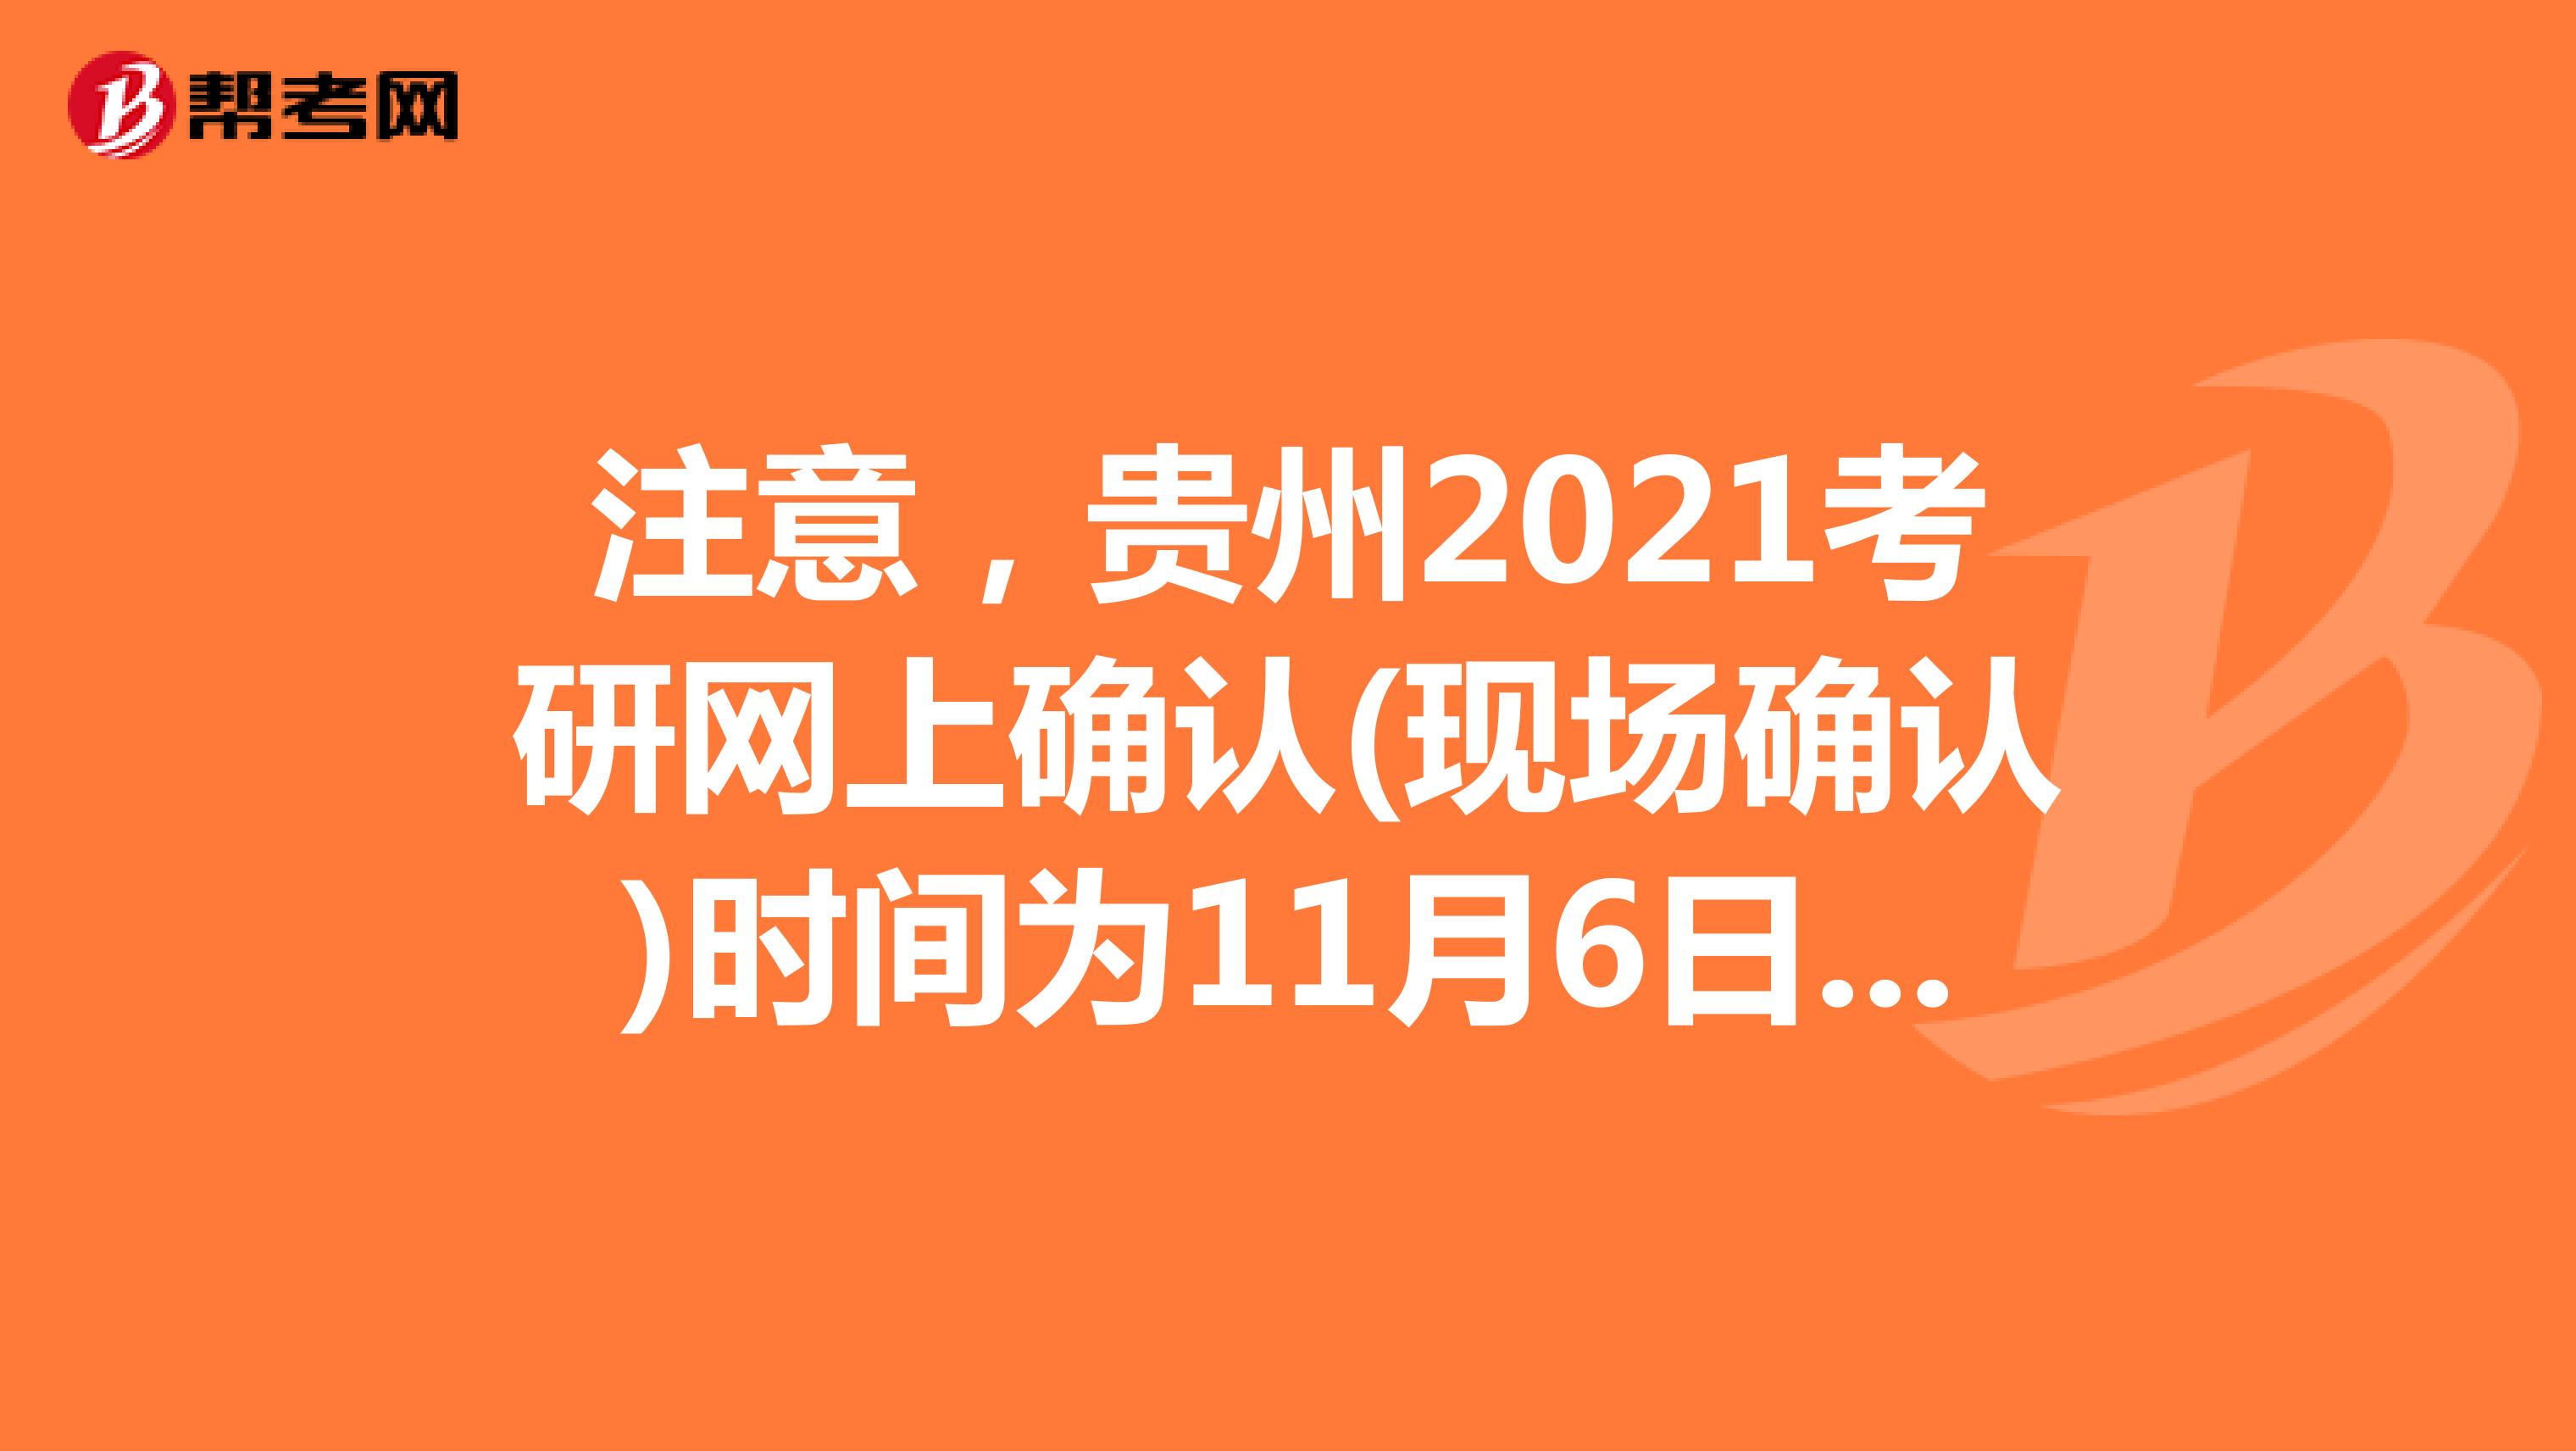 注意，贵州2021考研网上确认(现场确认)时间为11月6日-10日